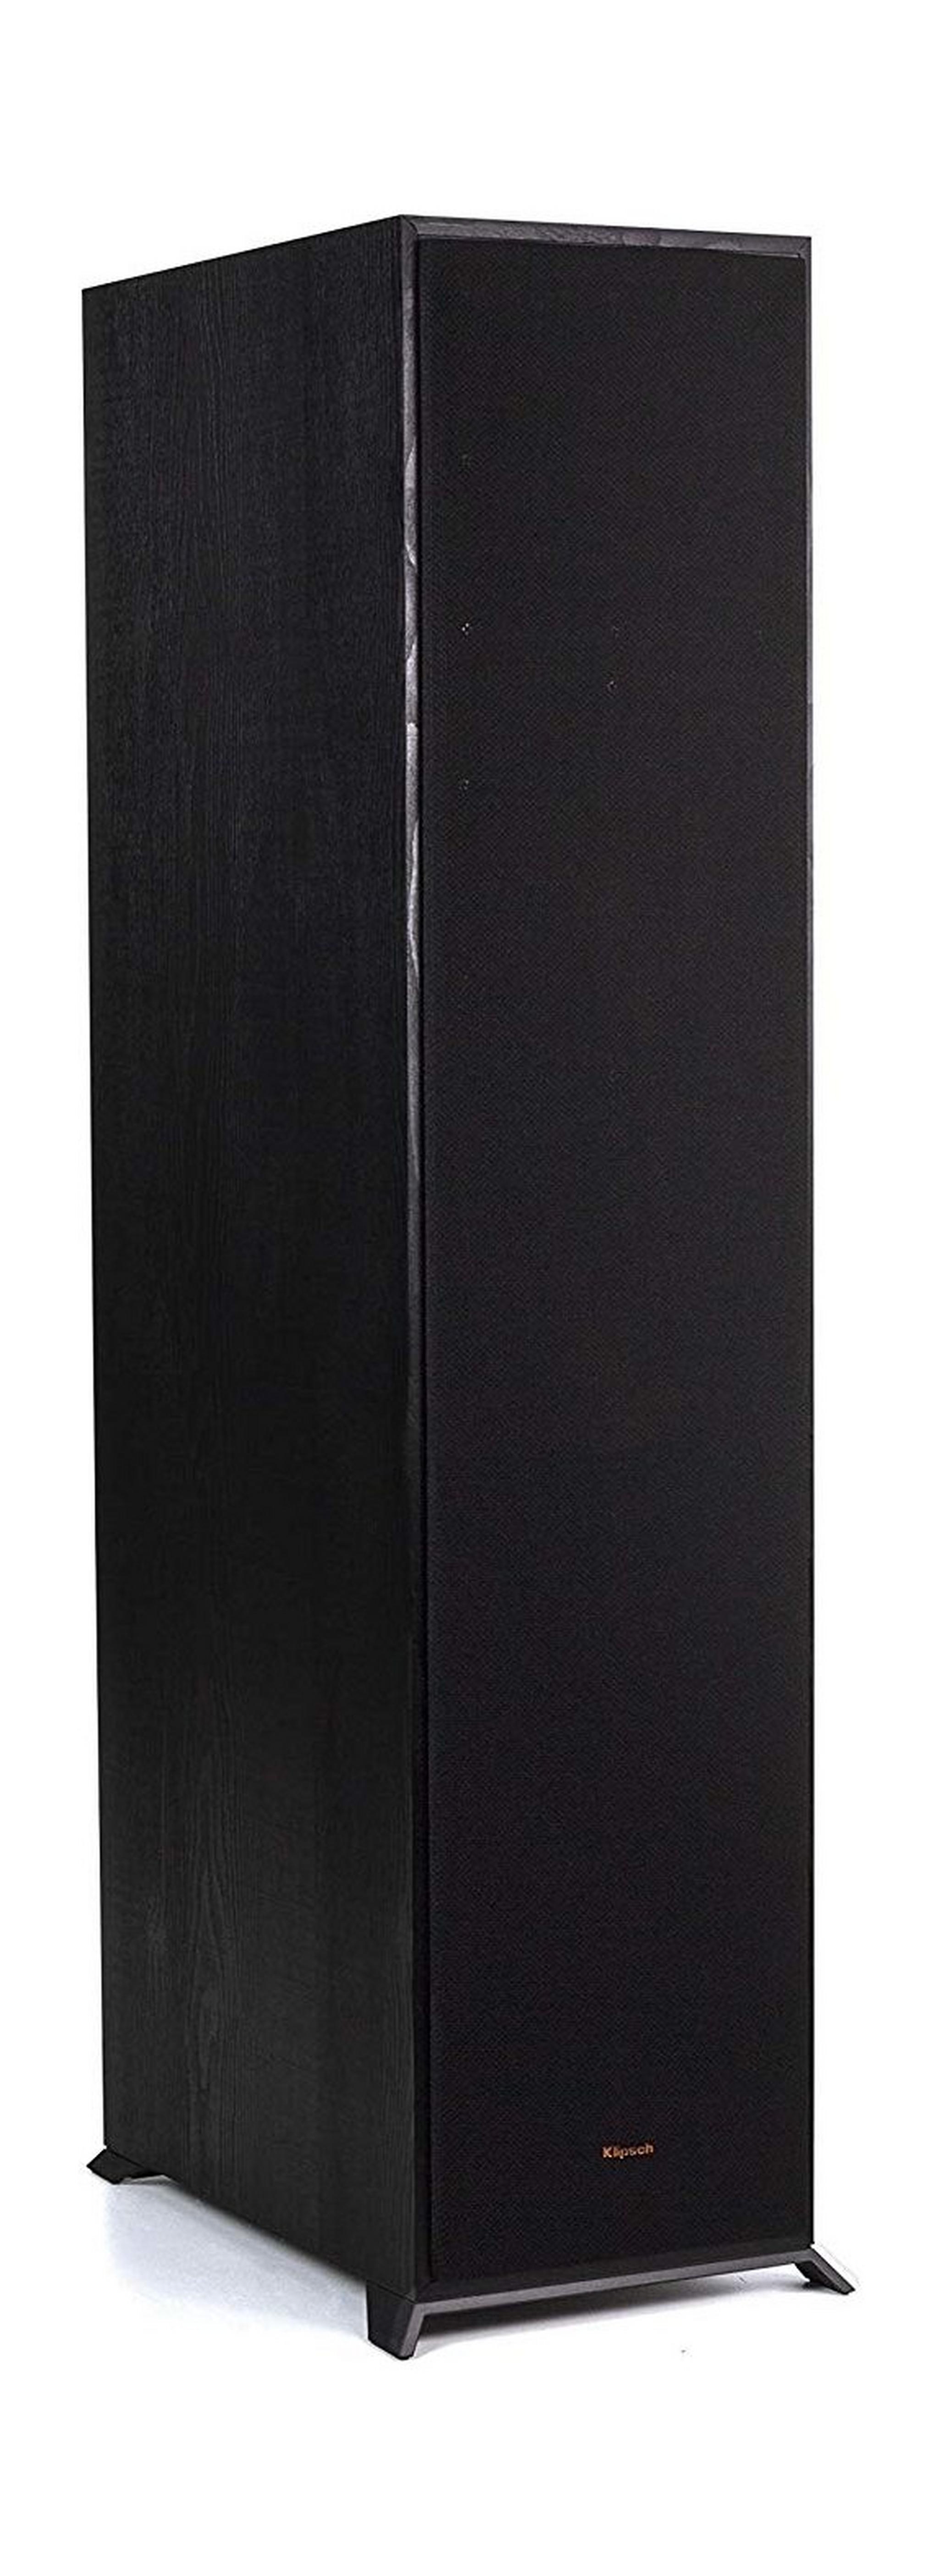 Klipsch R-820F Floorstanding Speaker - Black